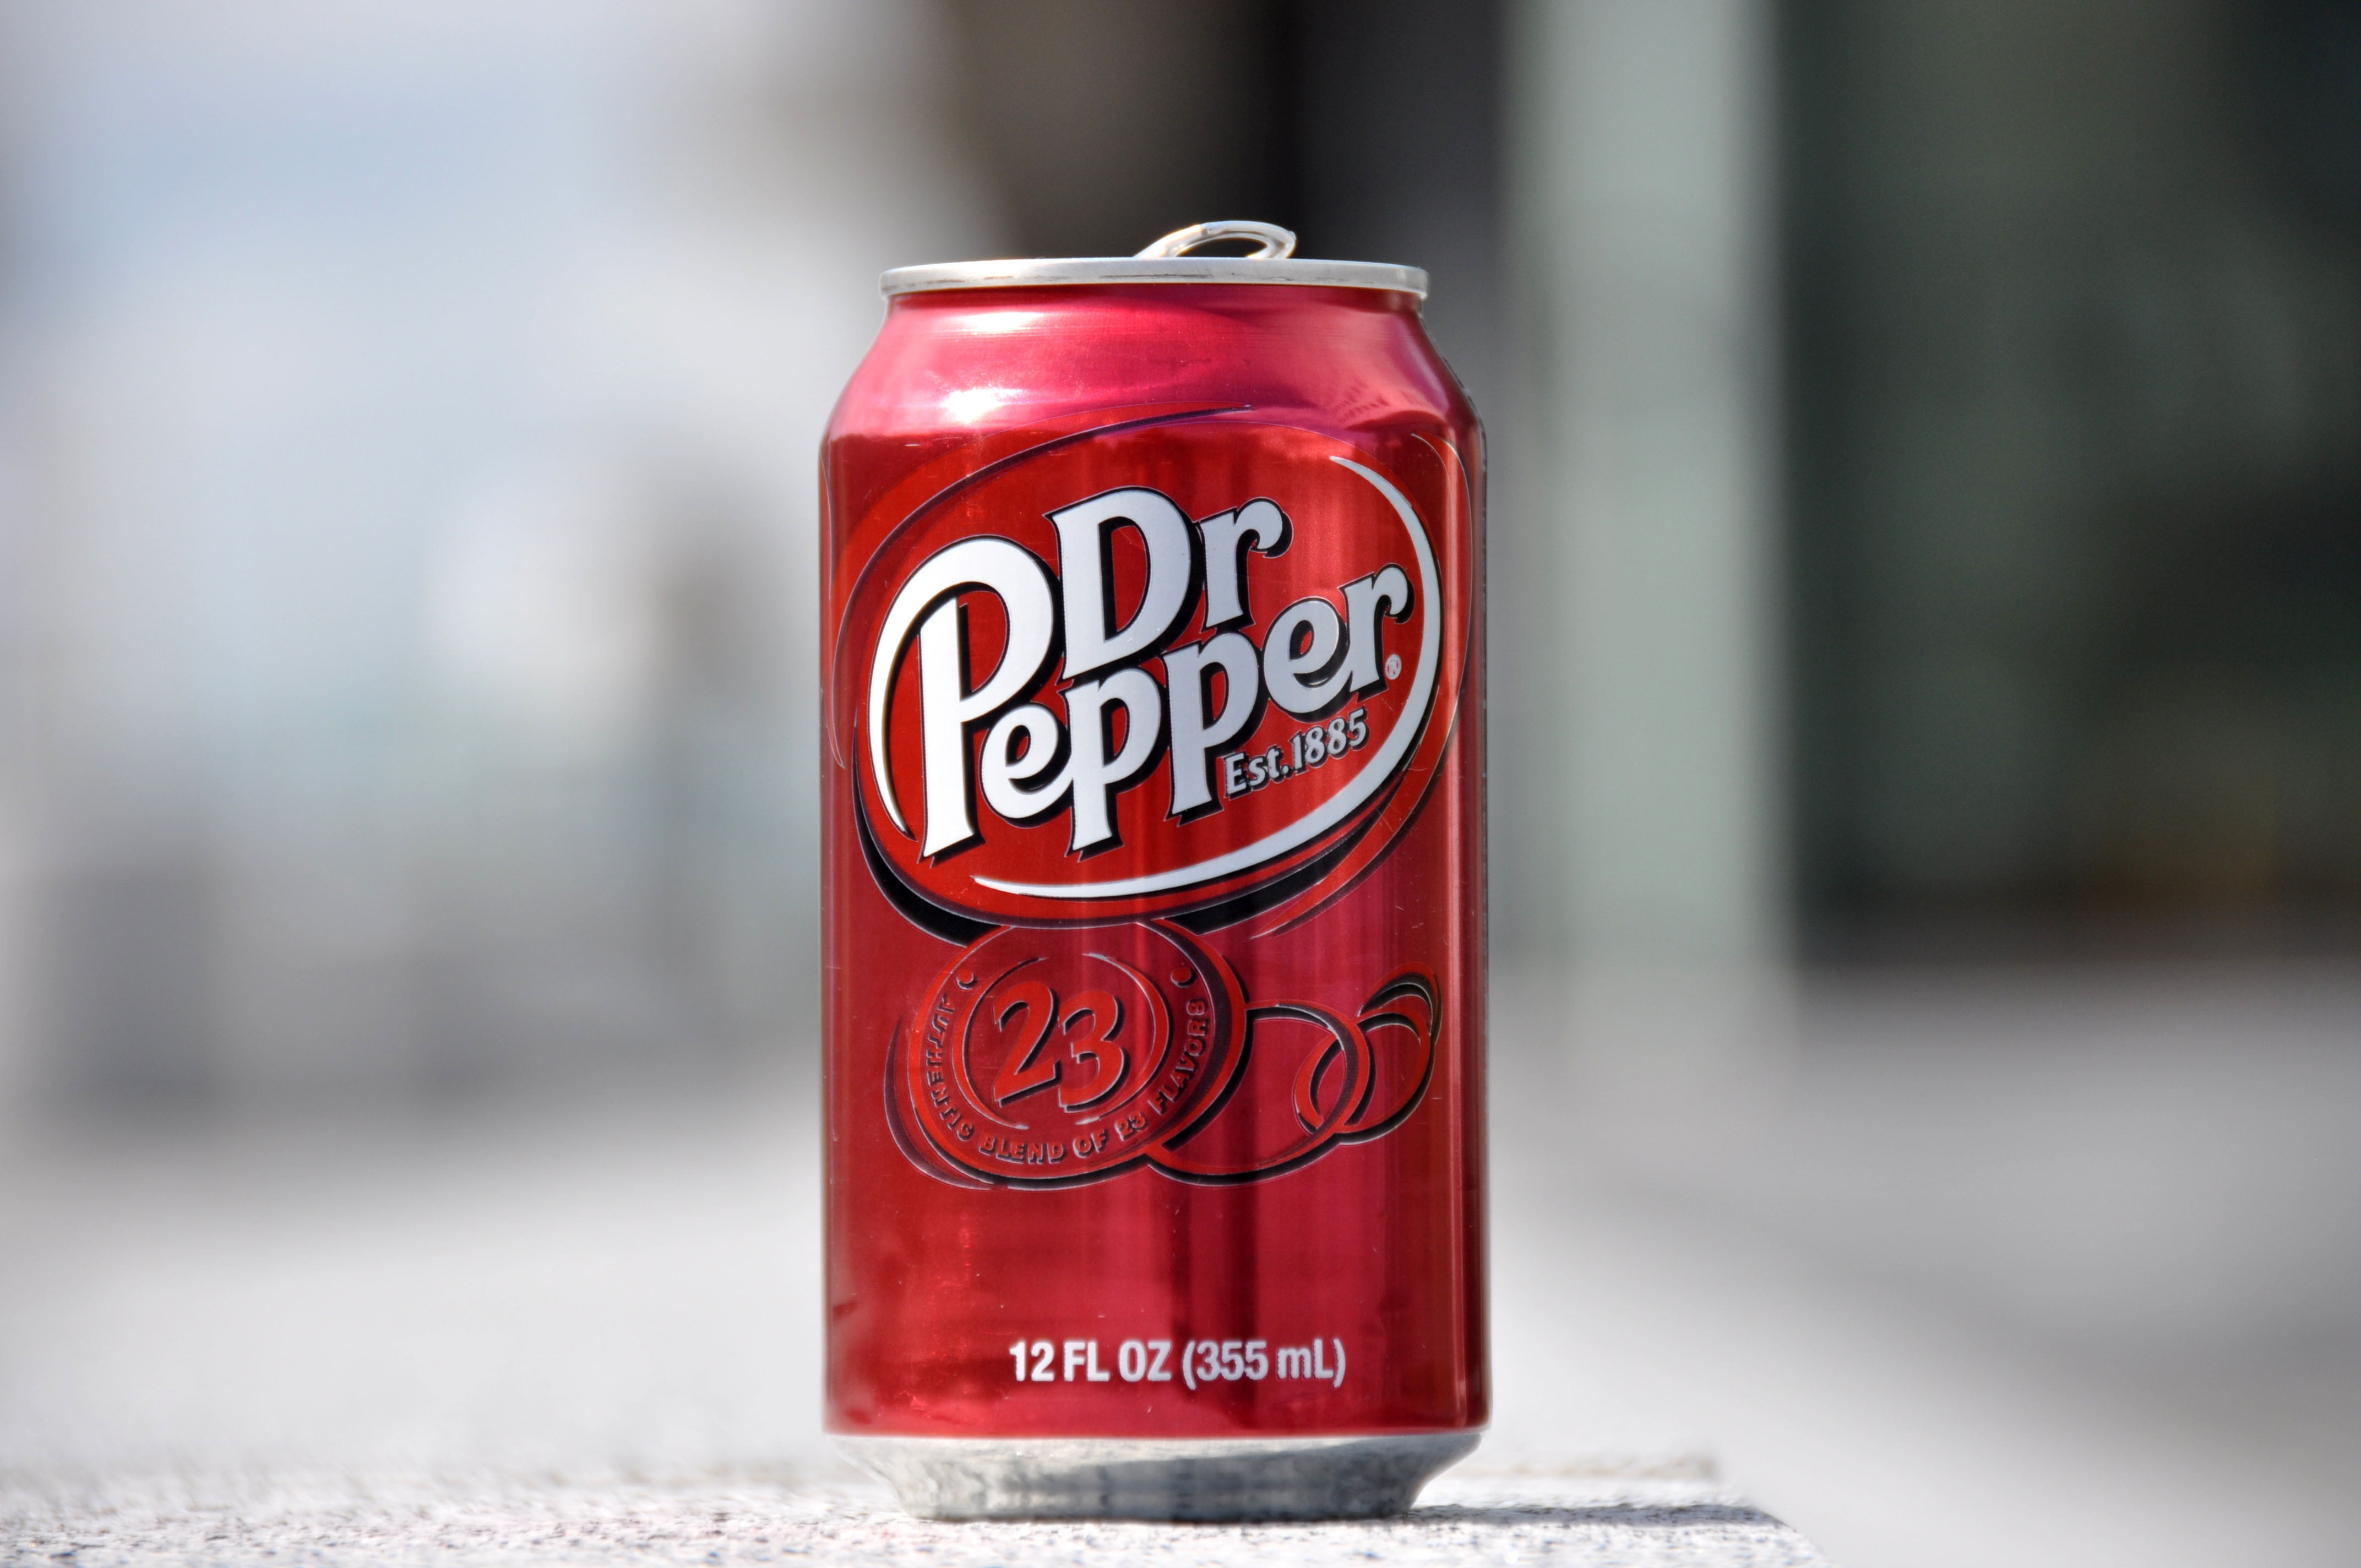 Mr pepper. Доктор Пеппер 1885. Газированные напитки доктор Пеппер. Доктор Пеппер в банке. Доктор Пеппер оригинал 355мл (12шт).